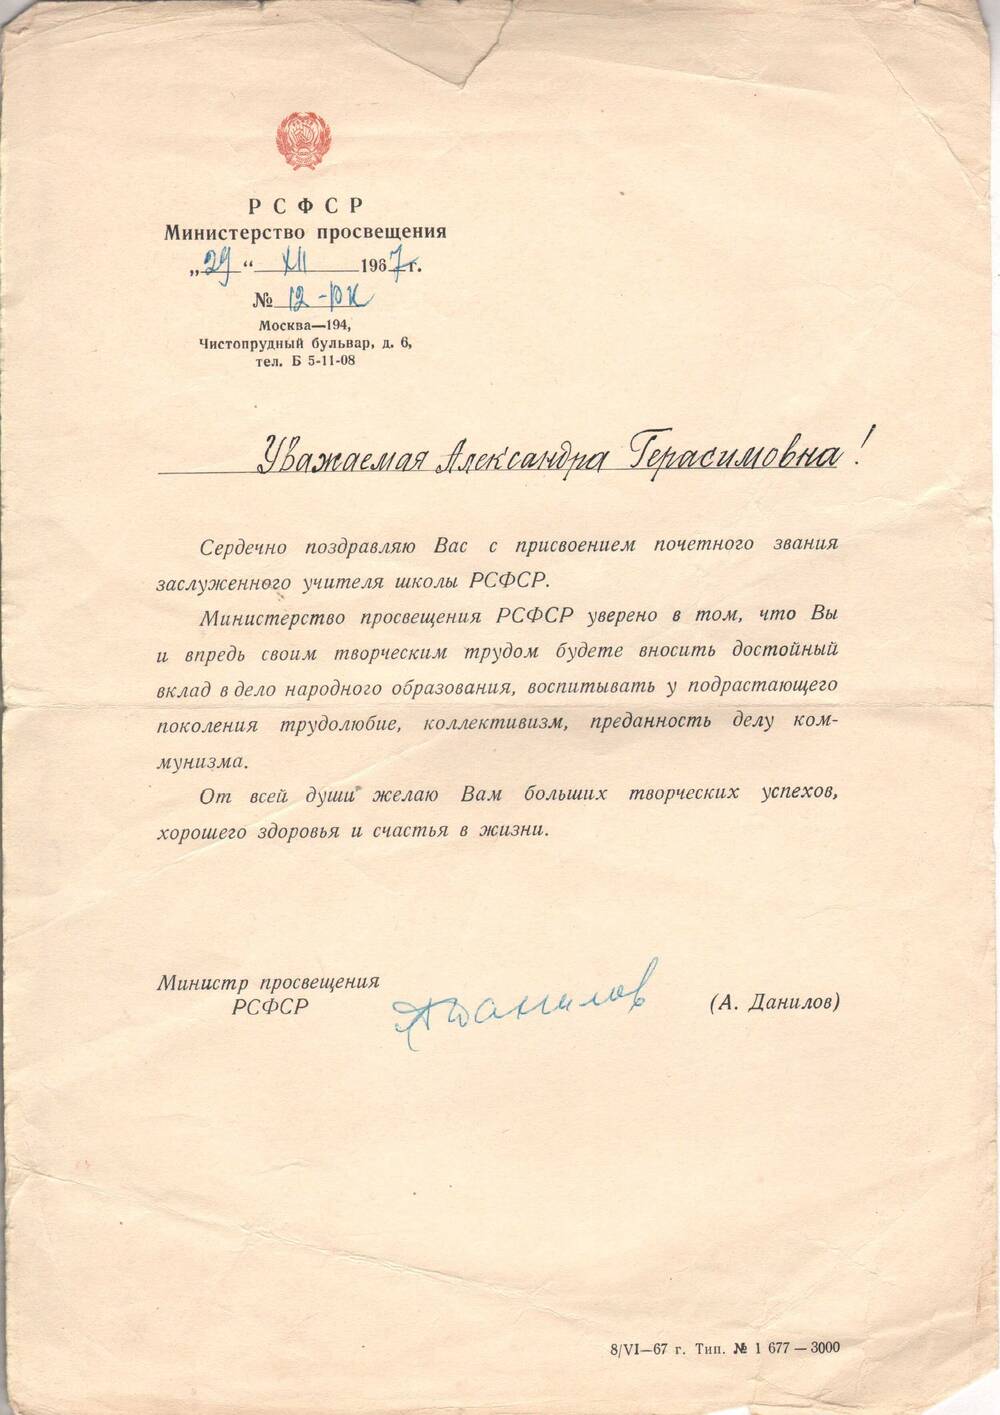 Письмо Сметаниной А.Г. о присвоении почетного звания заслуженного учителя школы РСФСР